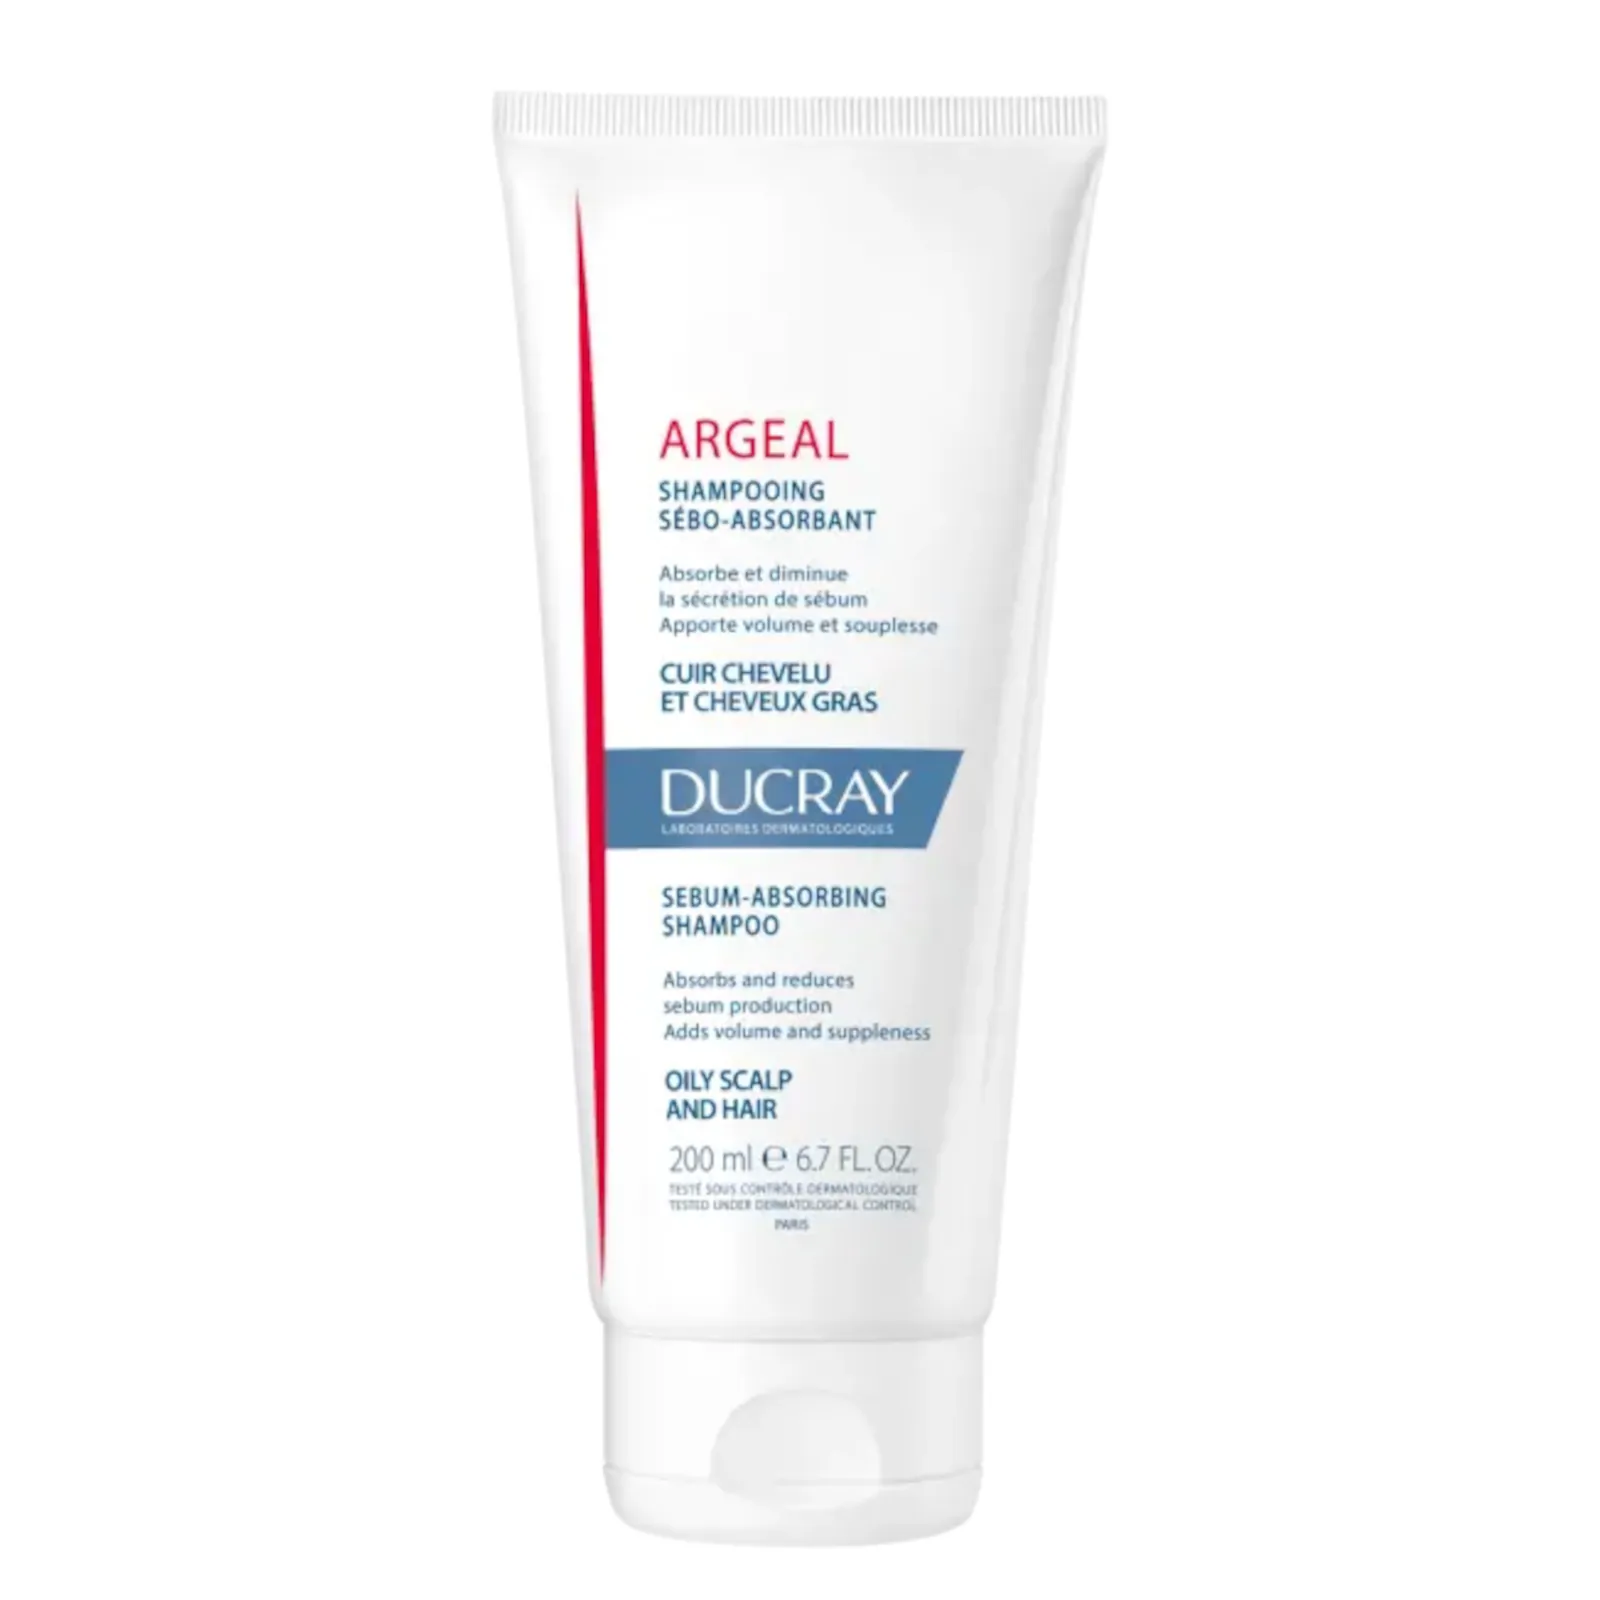 Ducray argeal shampoo 6.8fl.oz - Lyskin